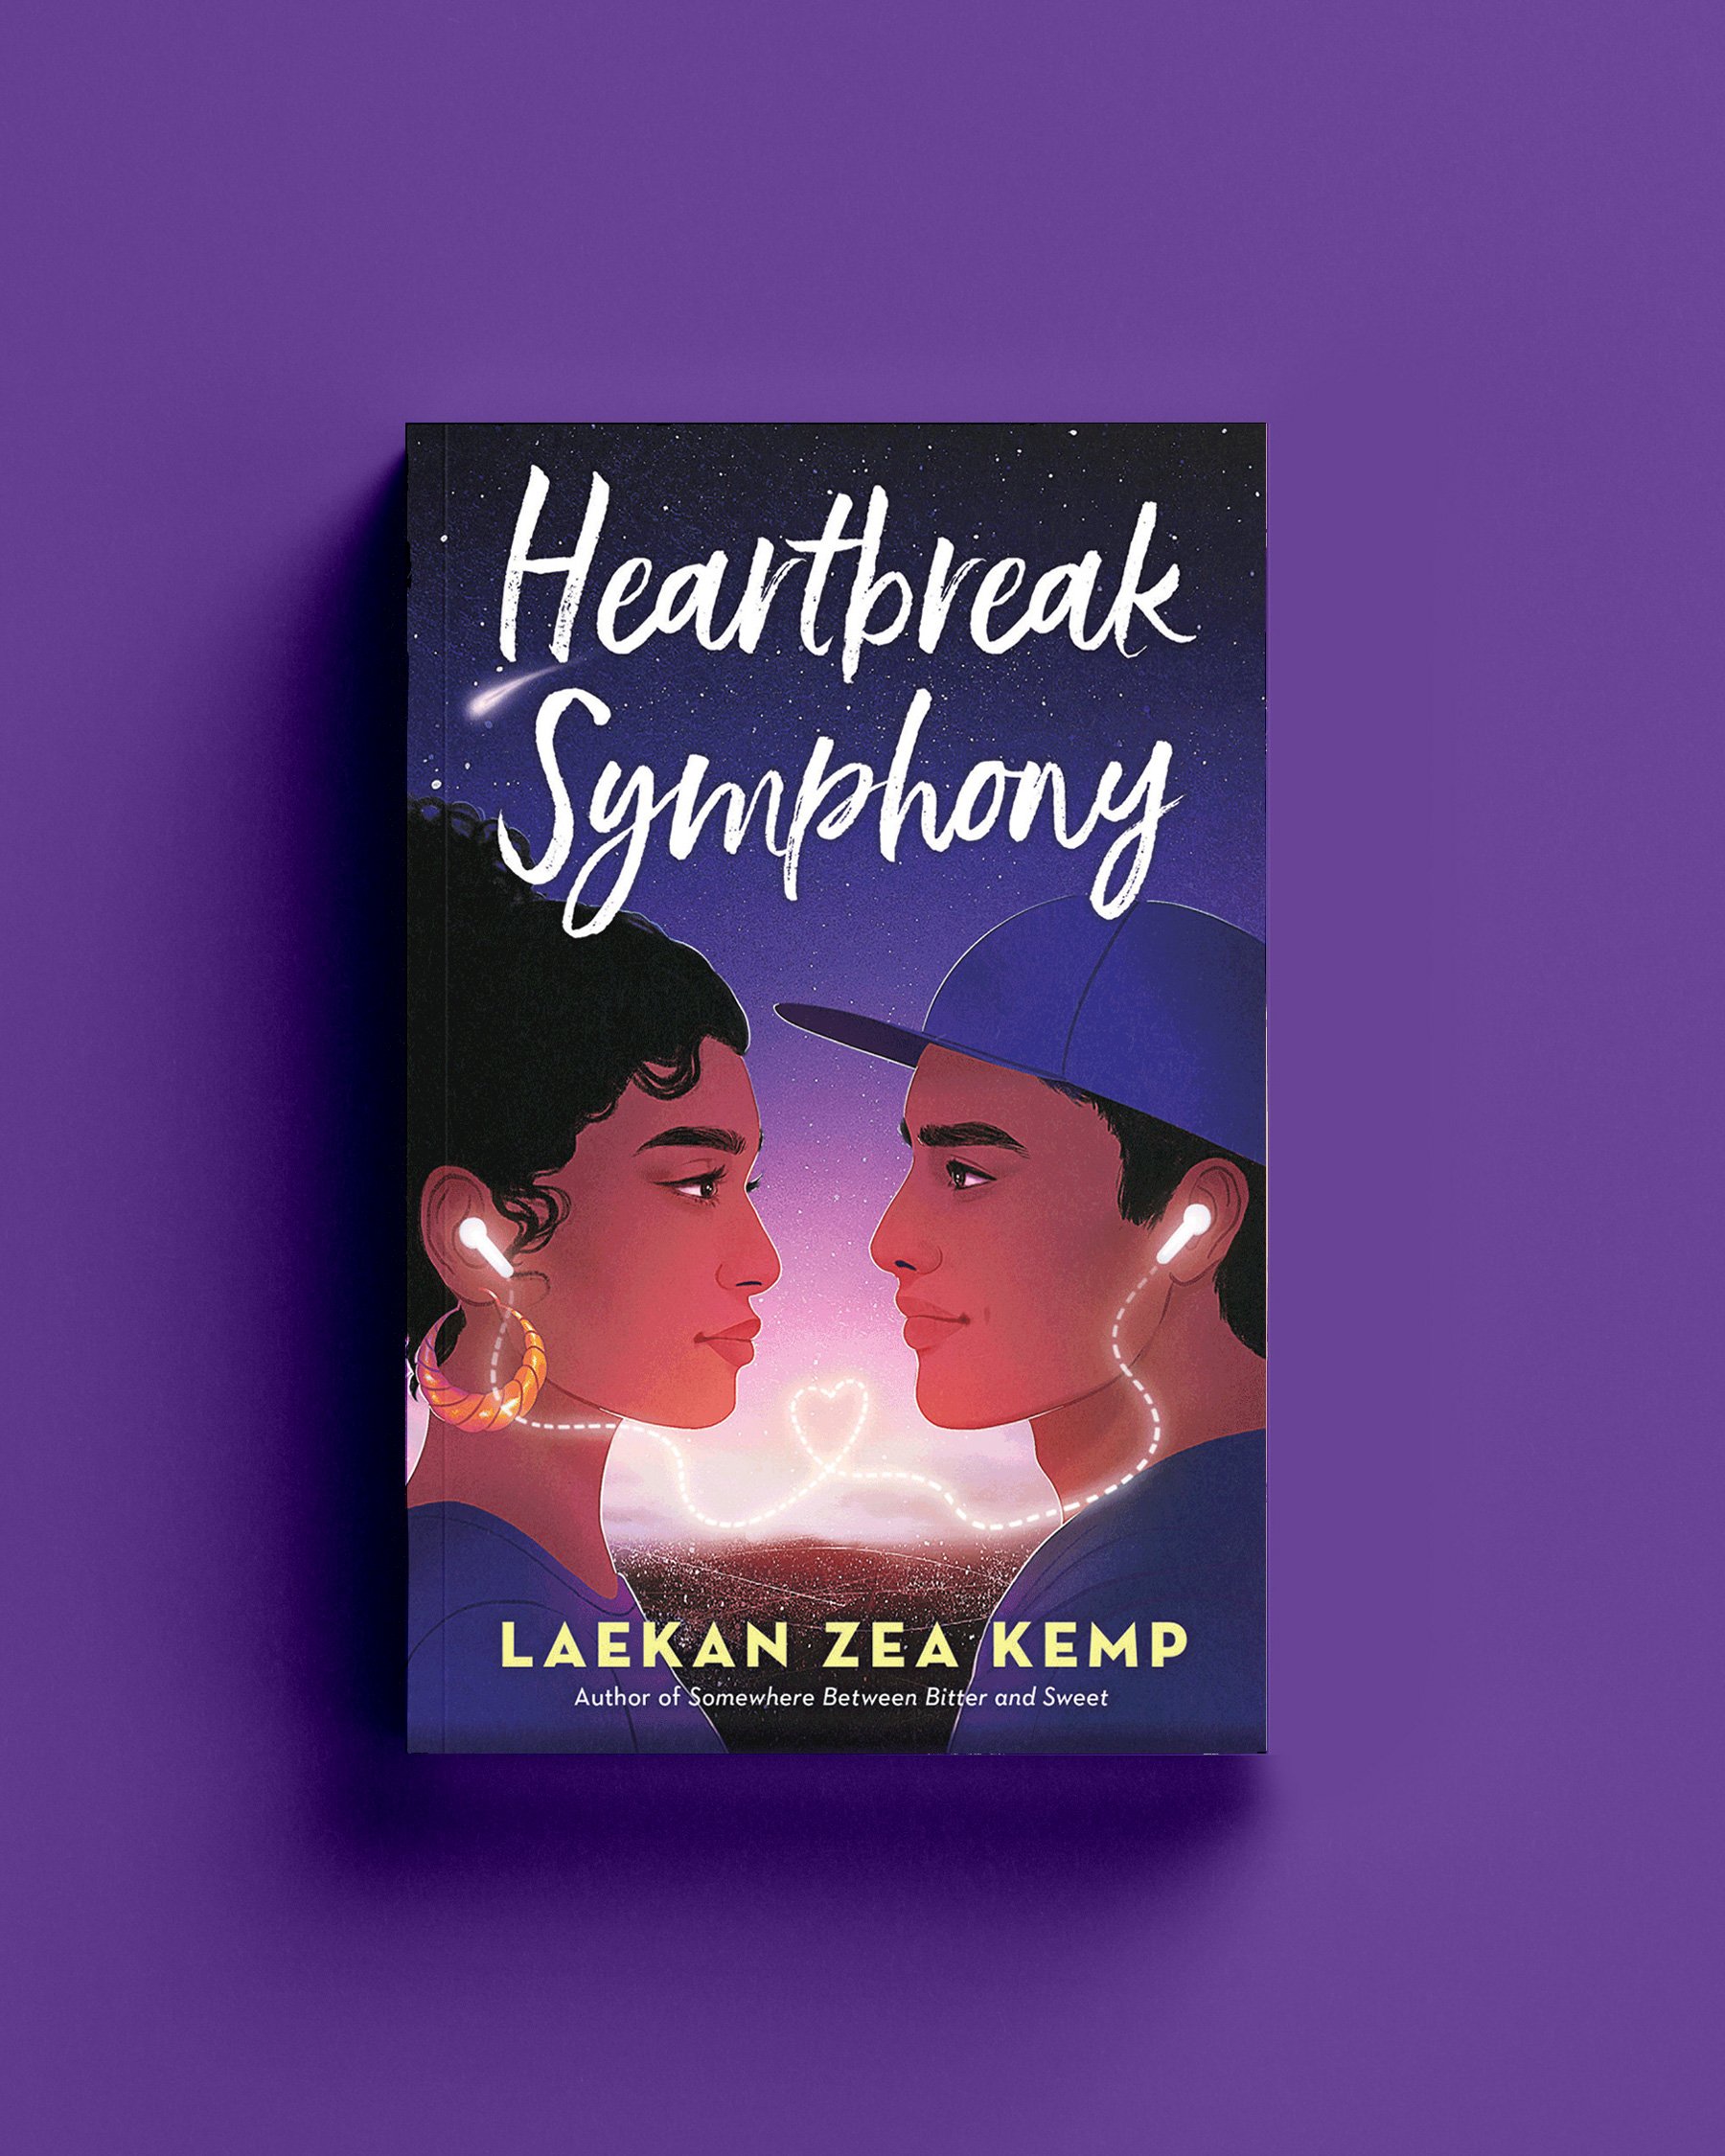 Cover for "Heartbreak Symphony" by Laekan Zea Kemp